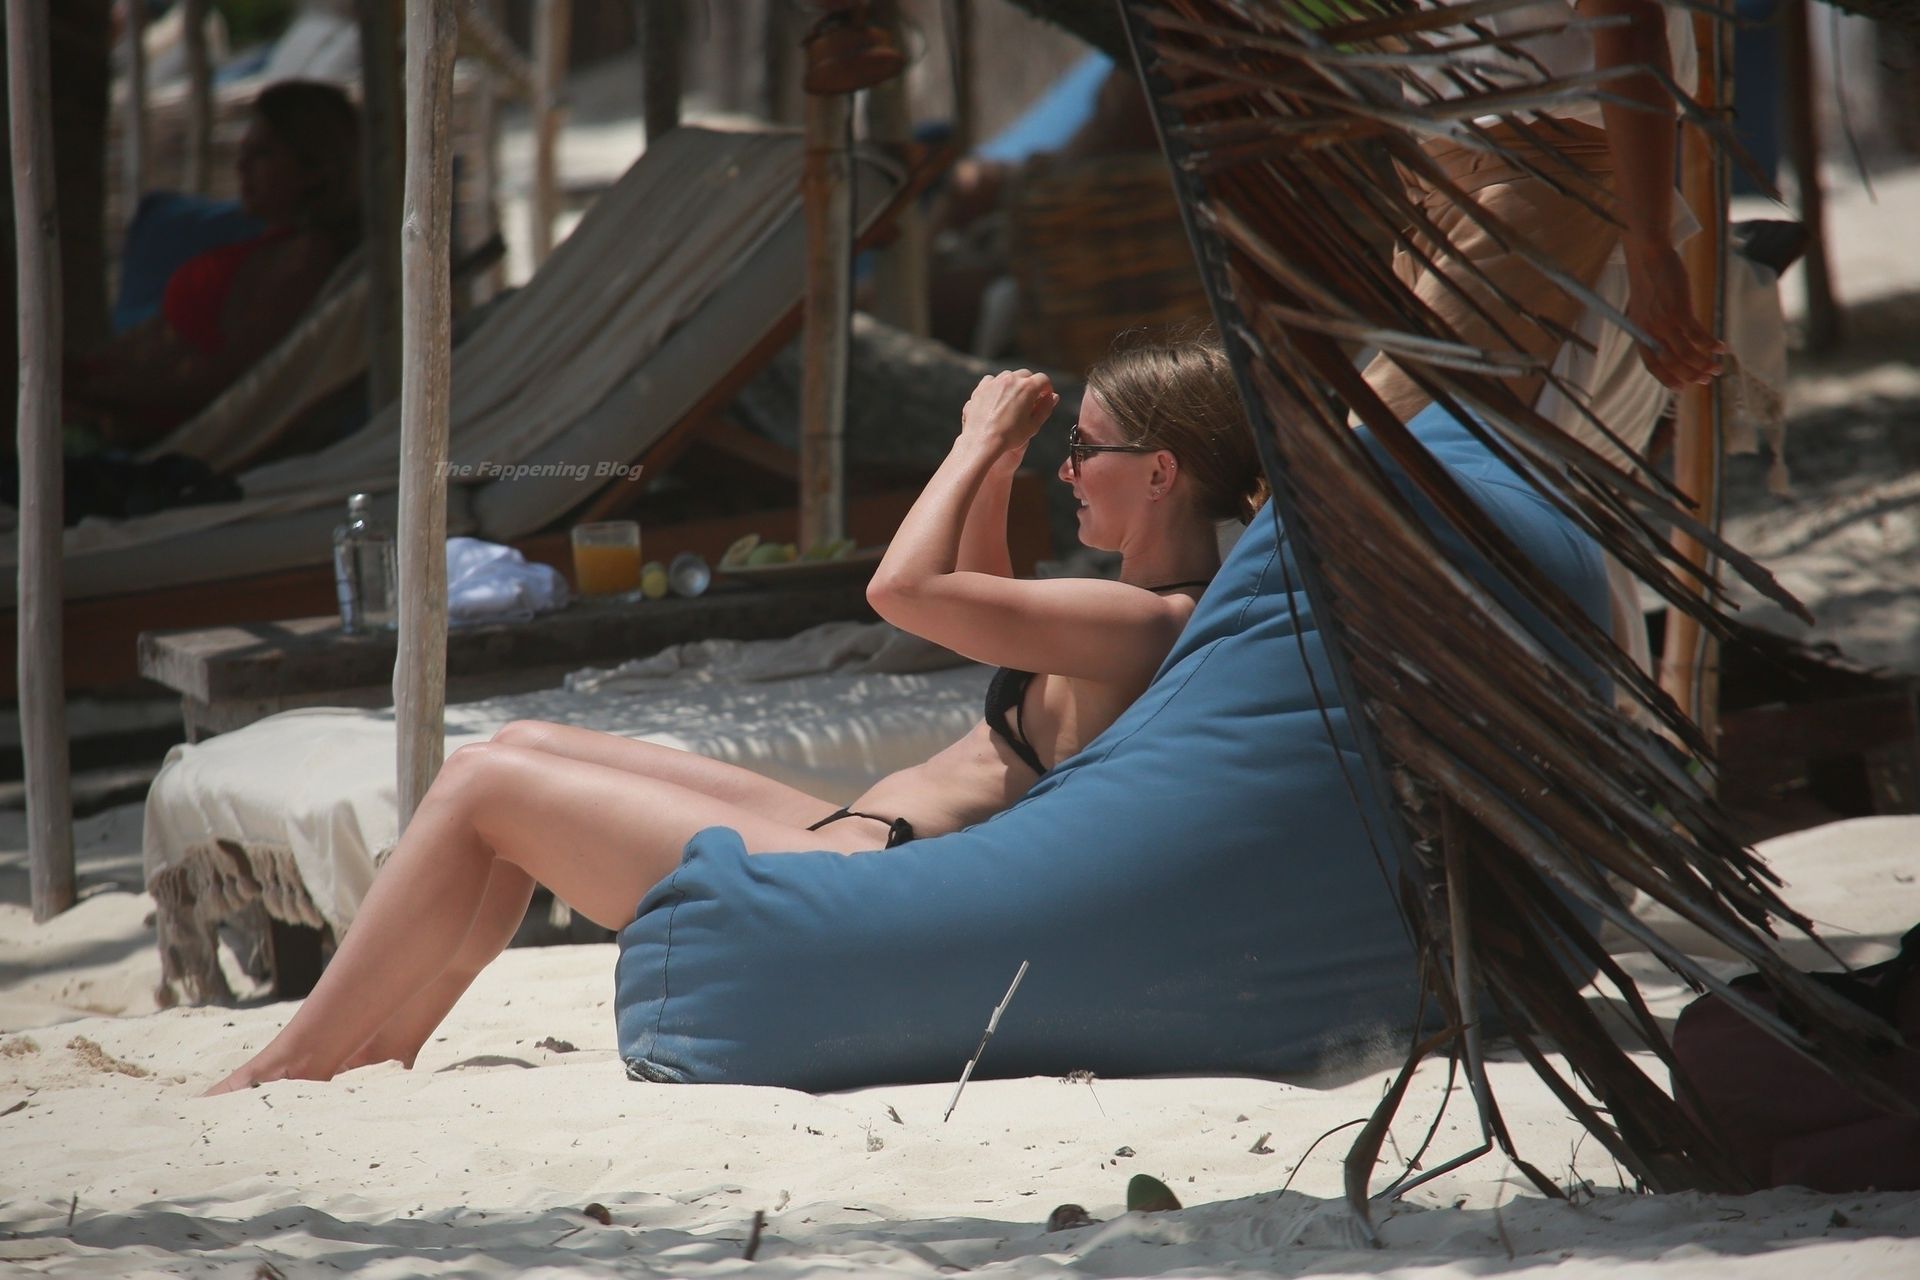 Julianne Hough Soaks Up the Sun in a Black Bikini in Tulum (131 Photos)